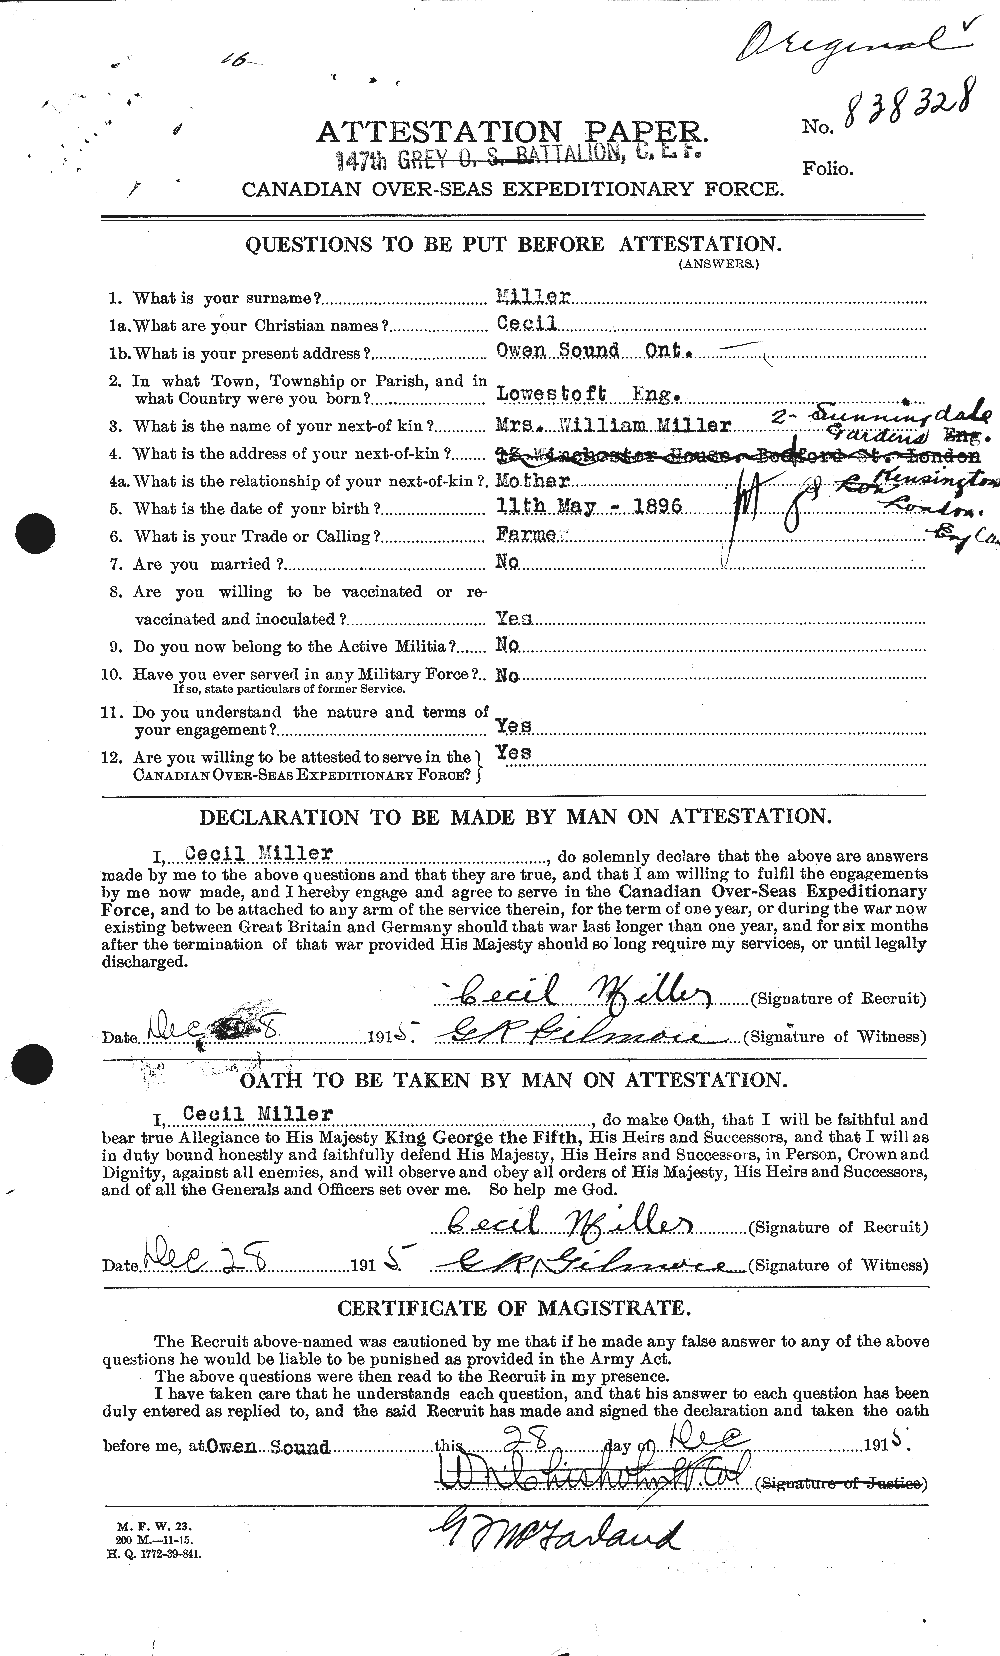 Dossiers du Personnel de la Première Guerre mondiale - CEC 498768a